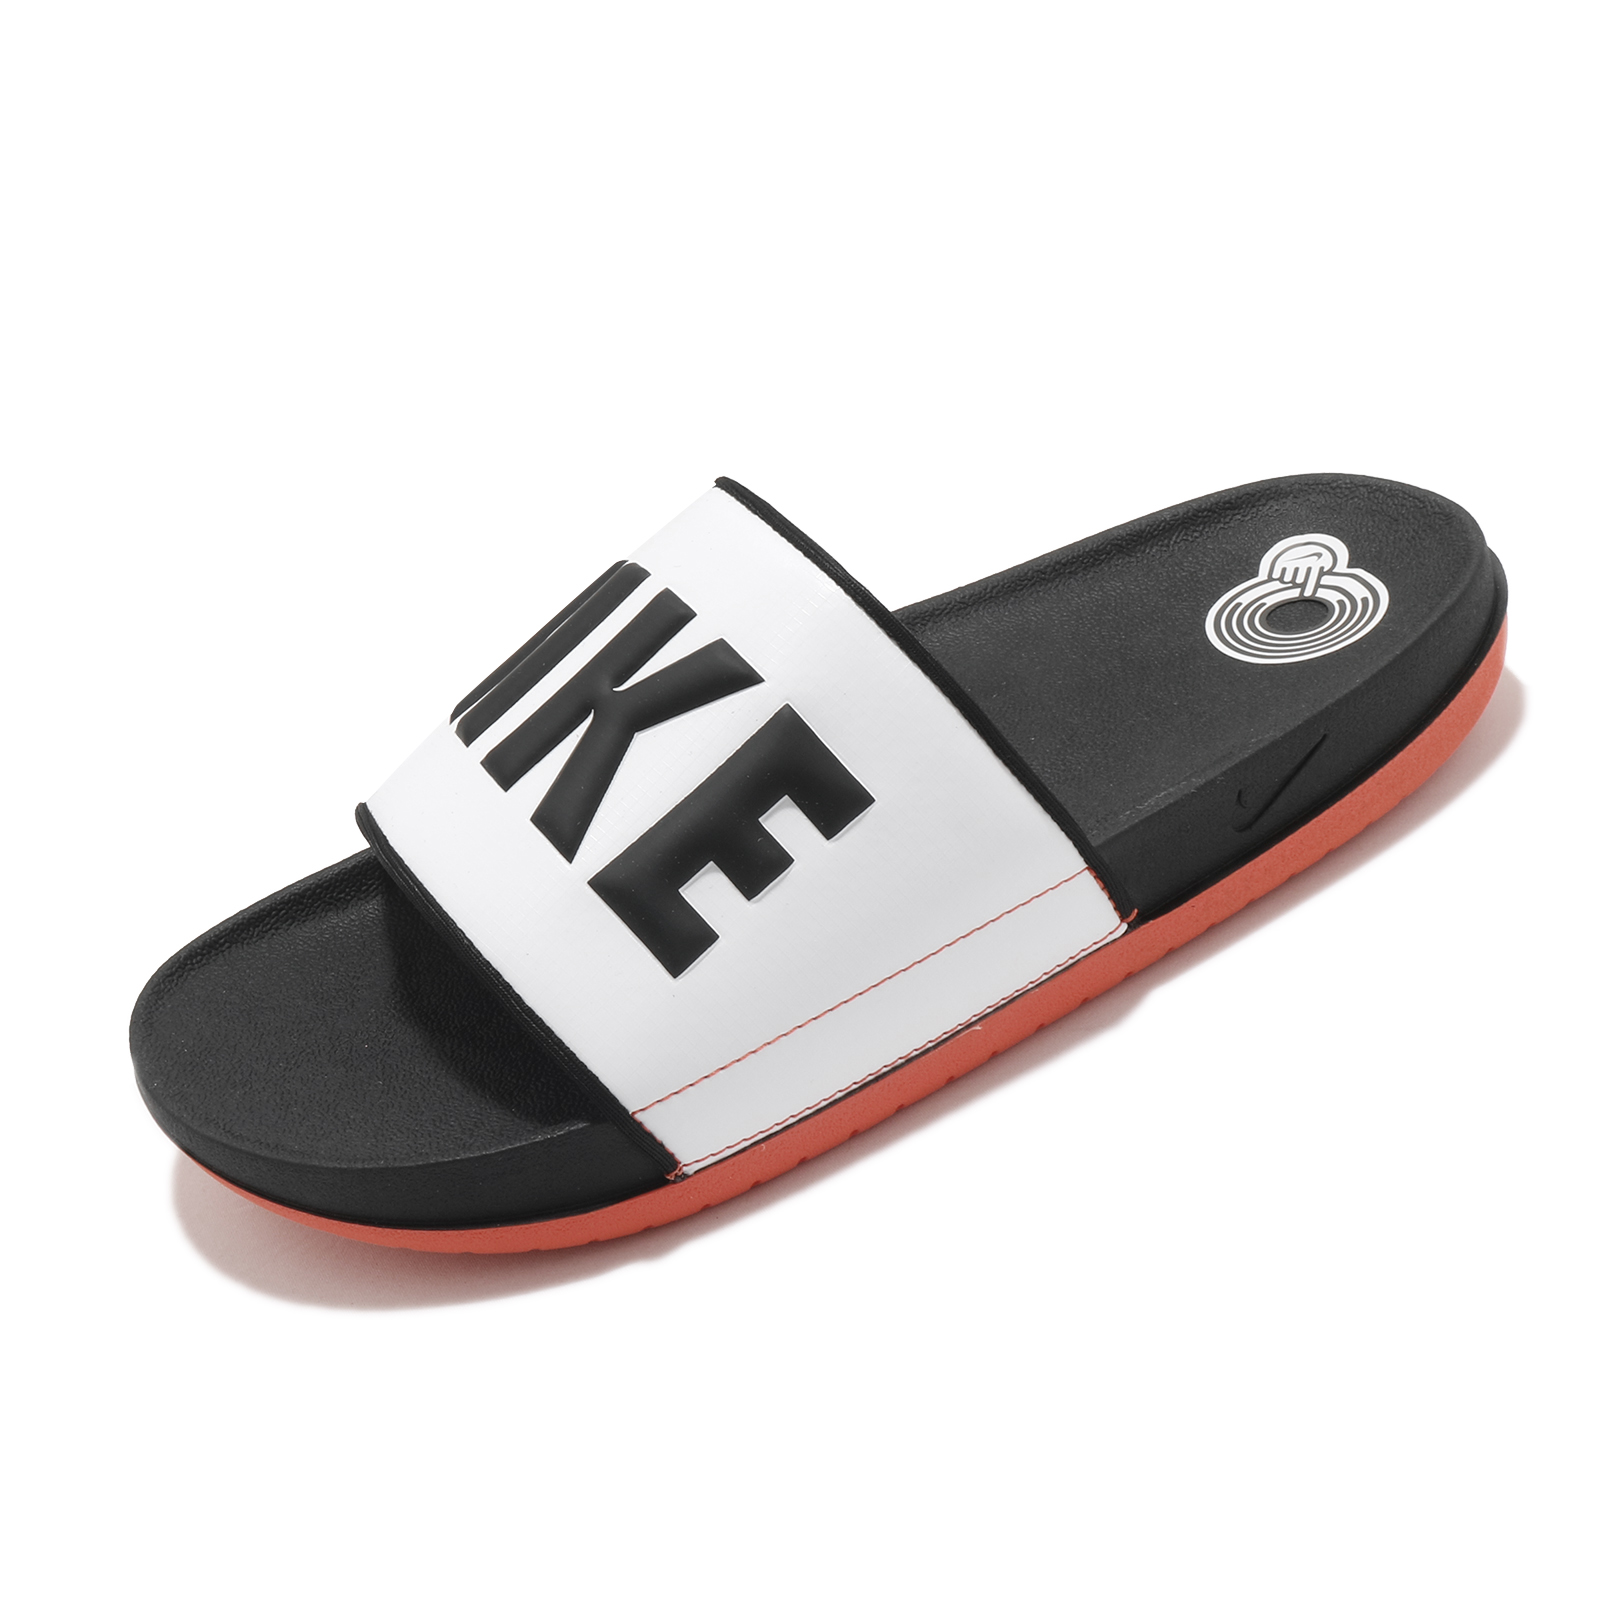 Nike 拖鞋 Offcourt Slide 黑 橘 Logo 男女鞋 涼拖鞋 運動拖鞋【ACS】 BQ4639-101